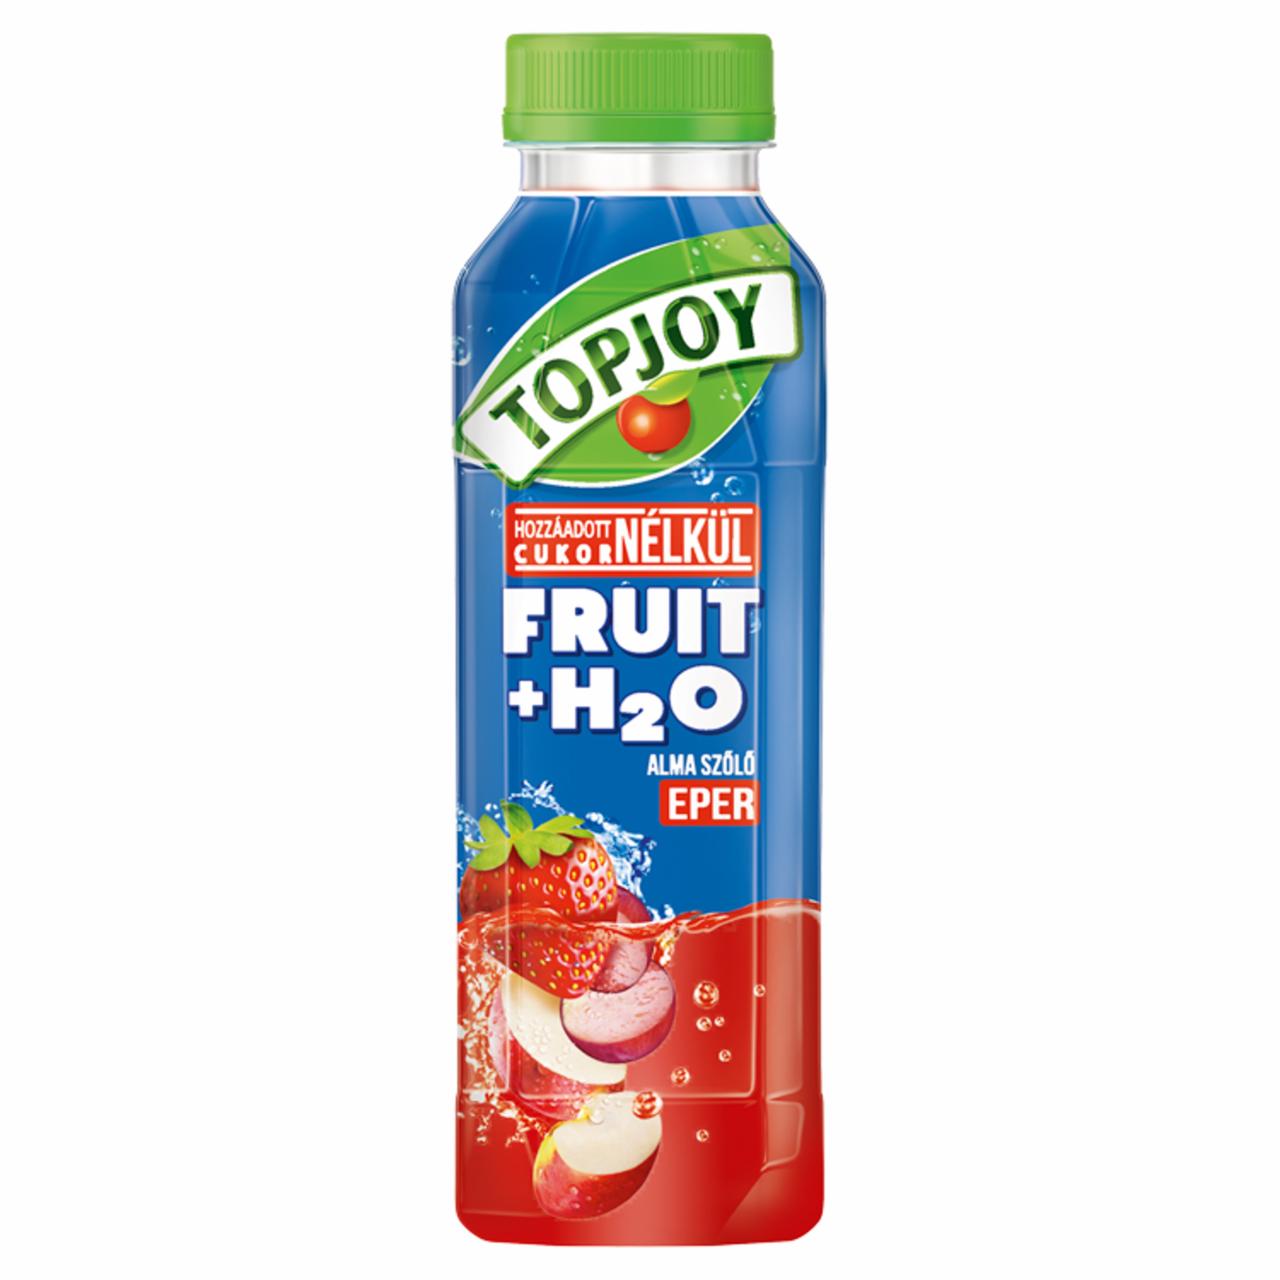 Képek - Topjoy Fruit+H₂O alma, szőlő, eperital hozzáadott E-vitaminnal 400 ml